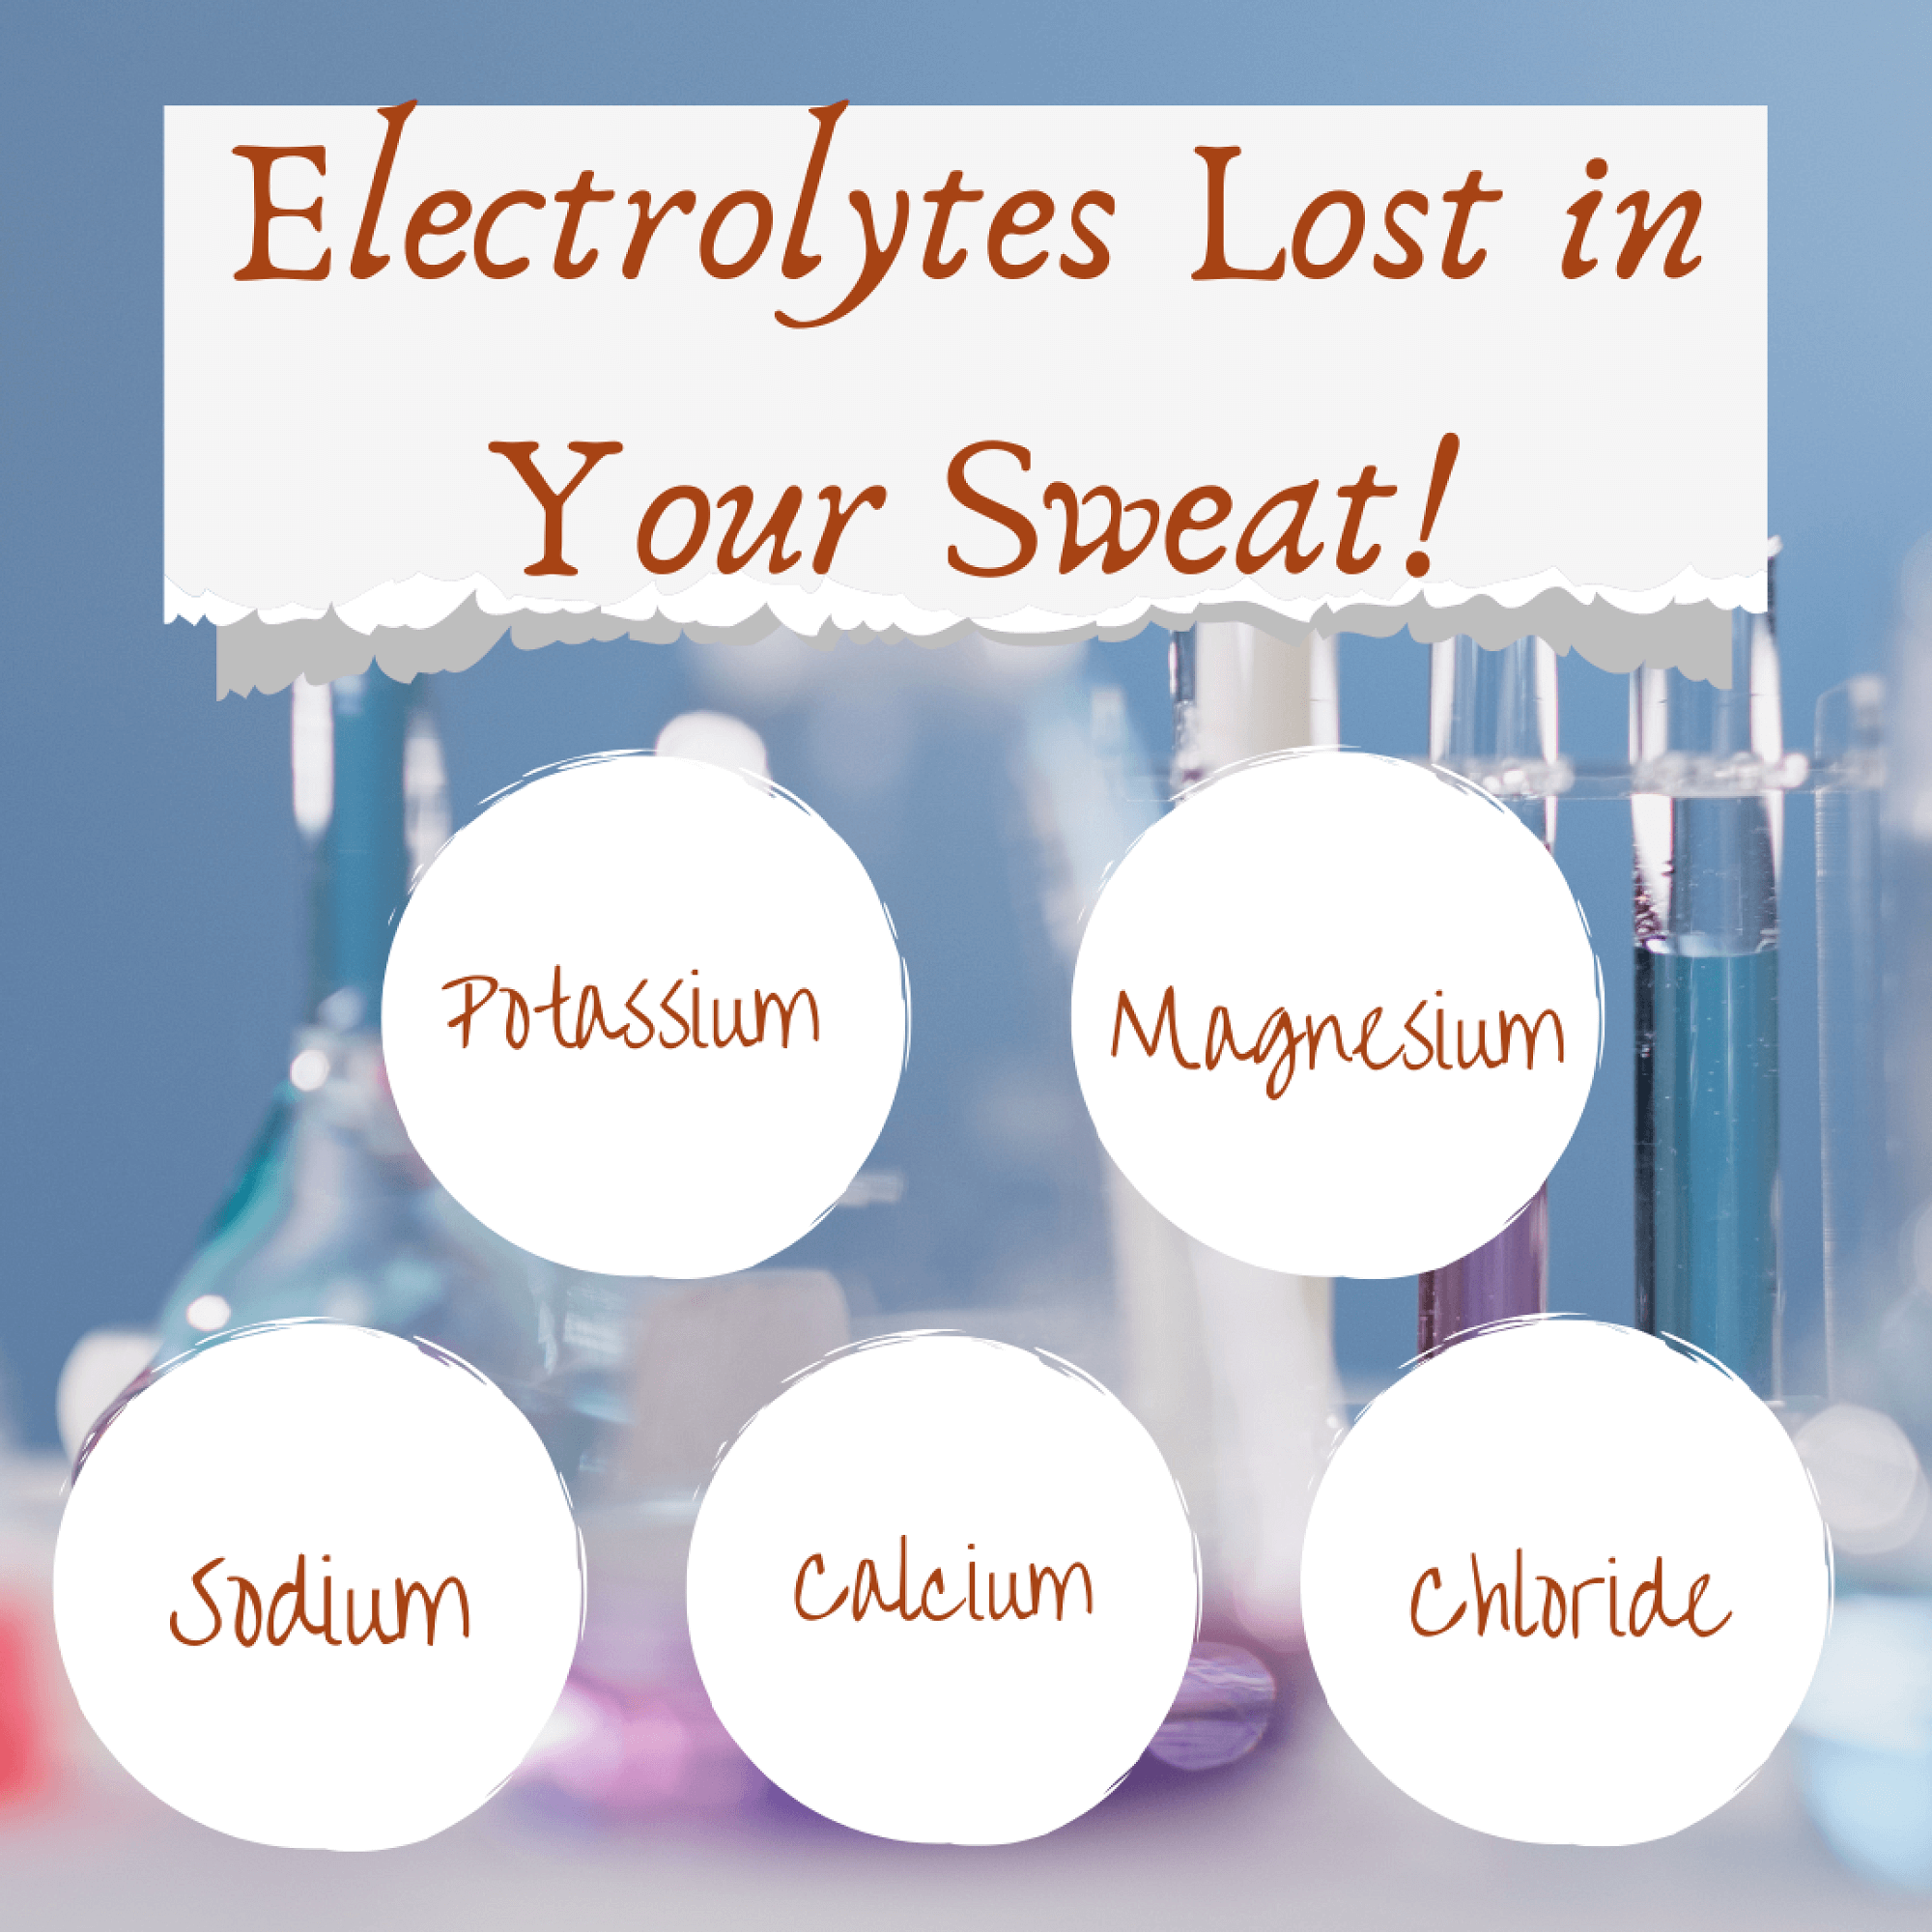 Electrolytes Lost in Your Sweat: potassium, magnesium, sodium, calcium, chloride.